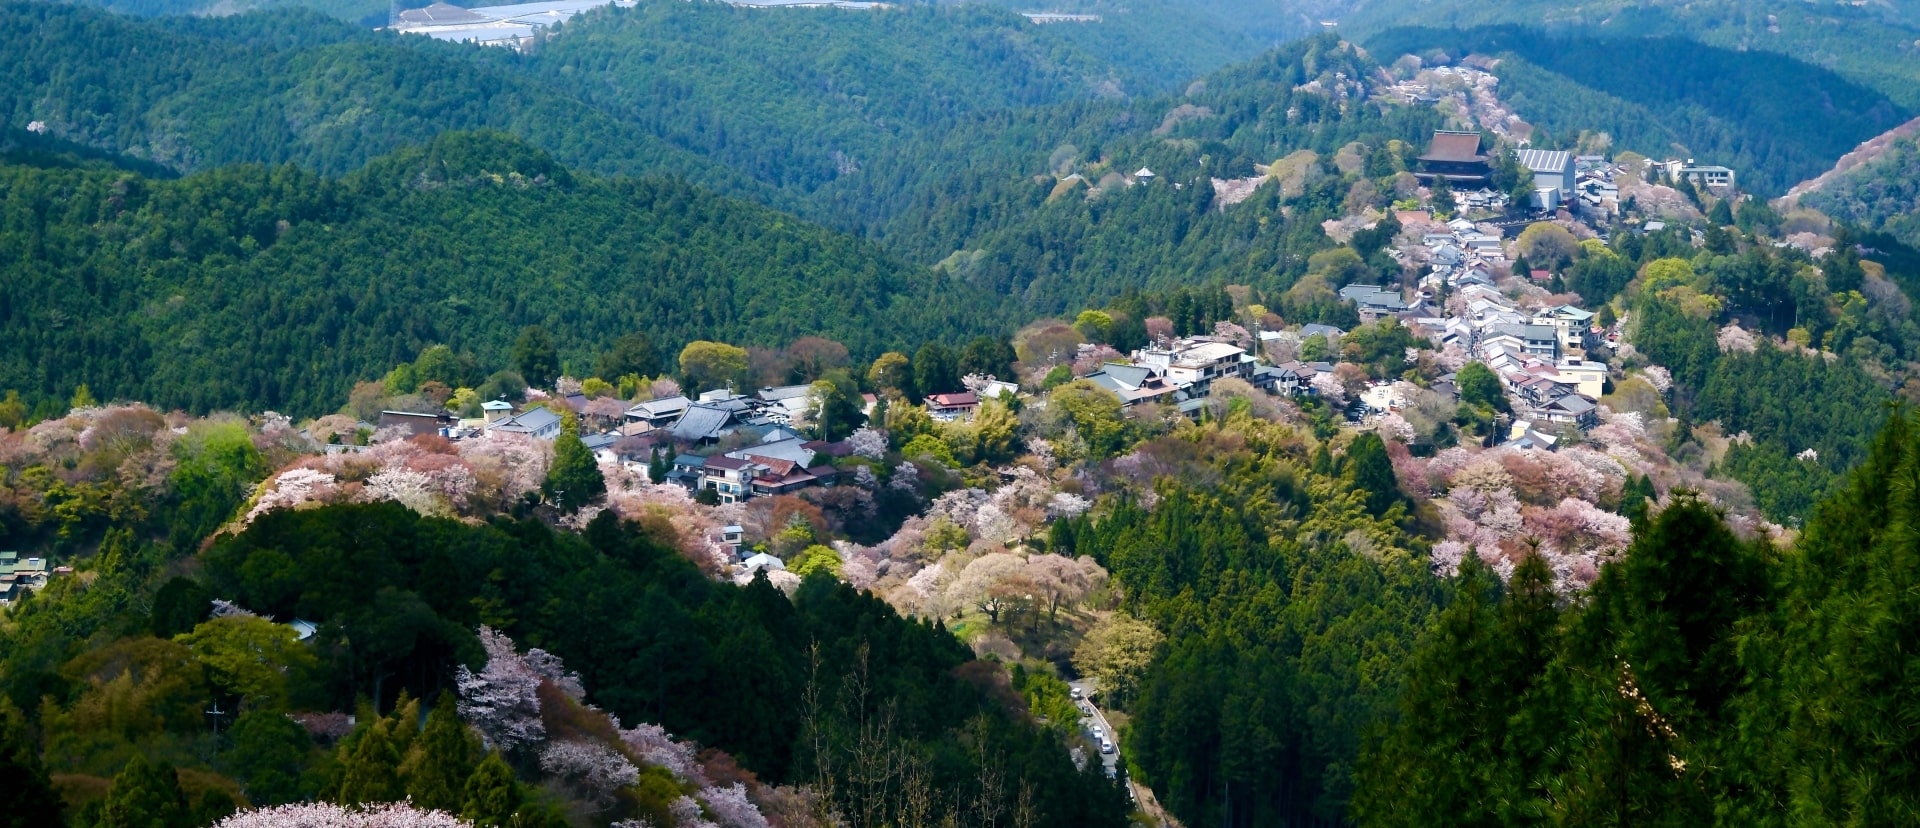 Mount Yoshino hiking